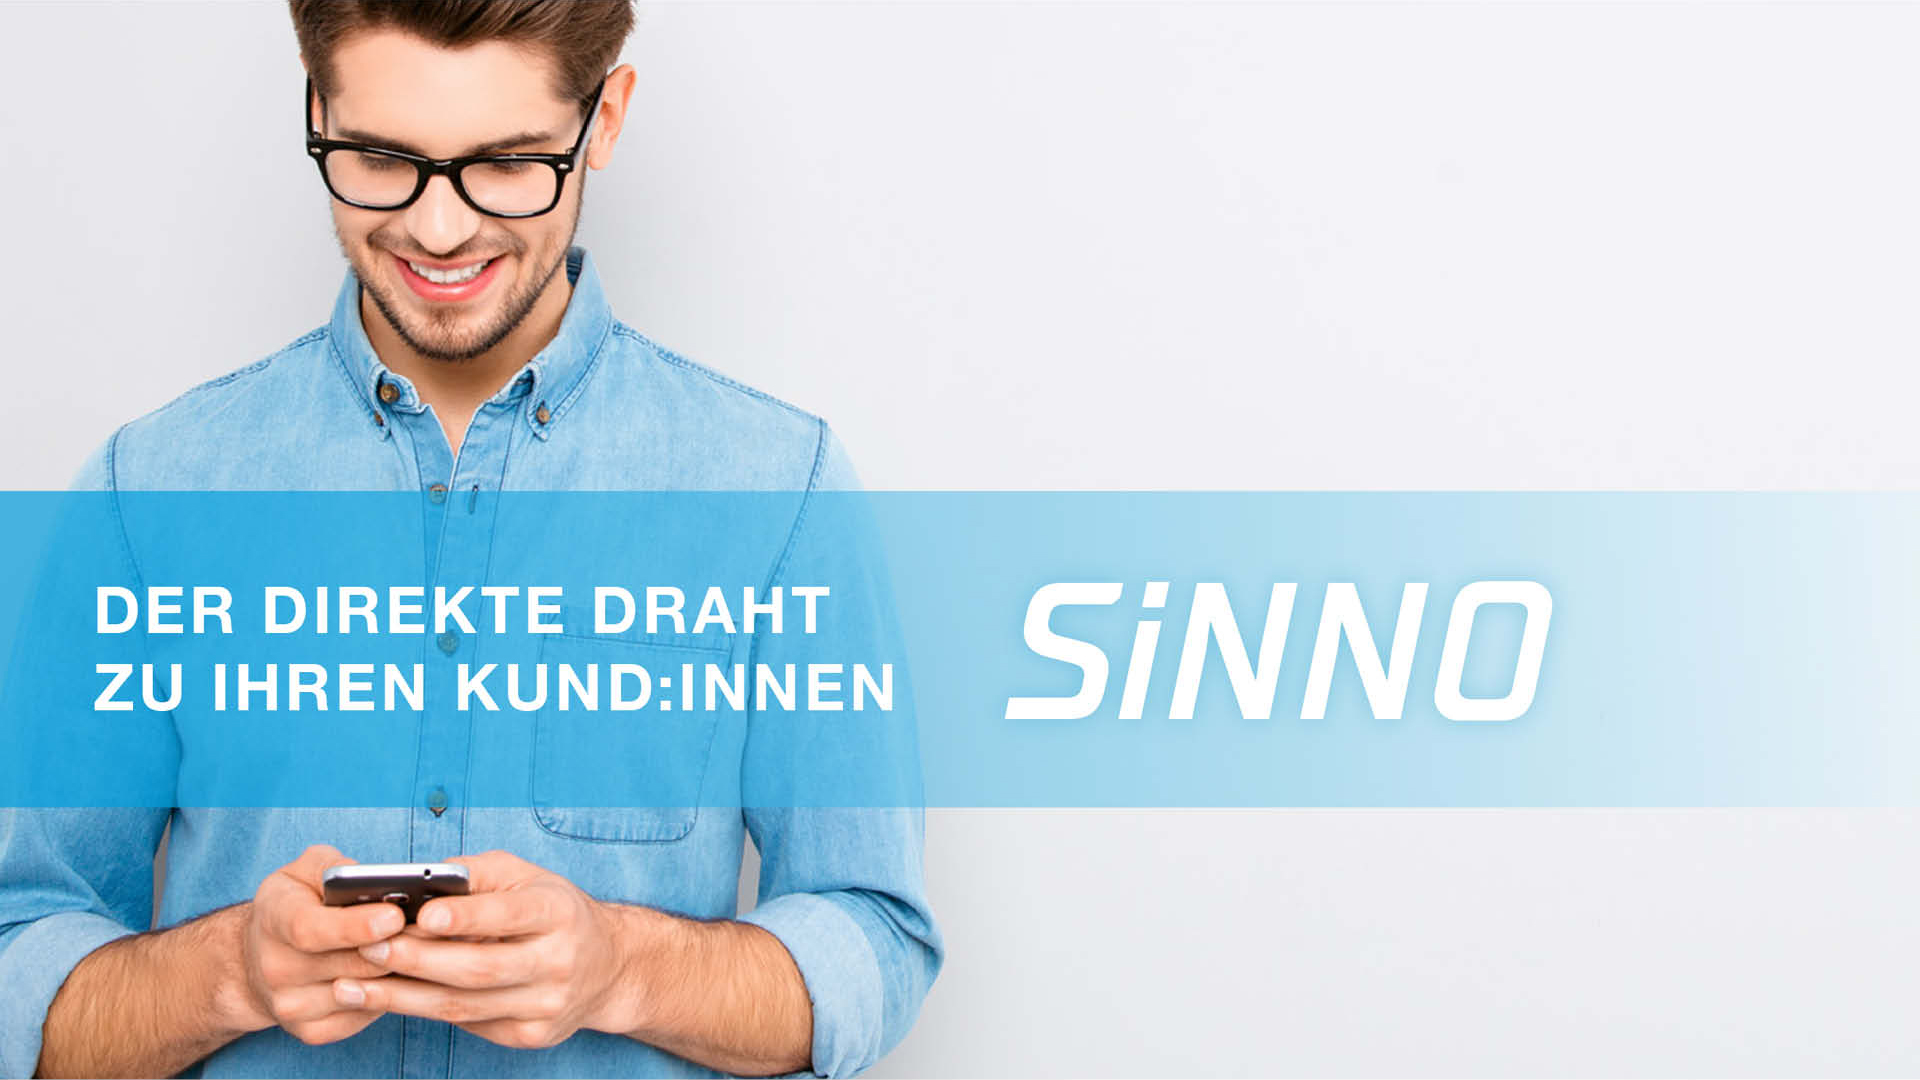 SiNNO Kommunikations-App für Augenoptiker und Hörgeräteakustiker